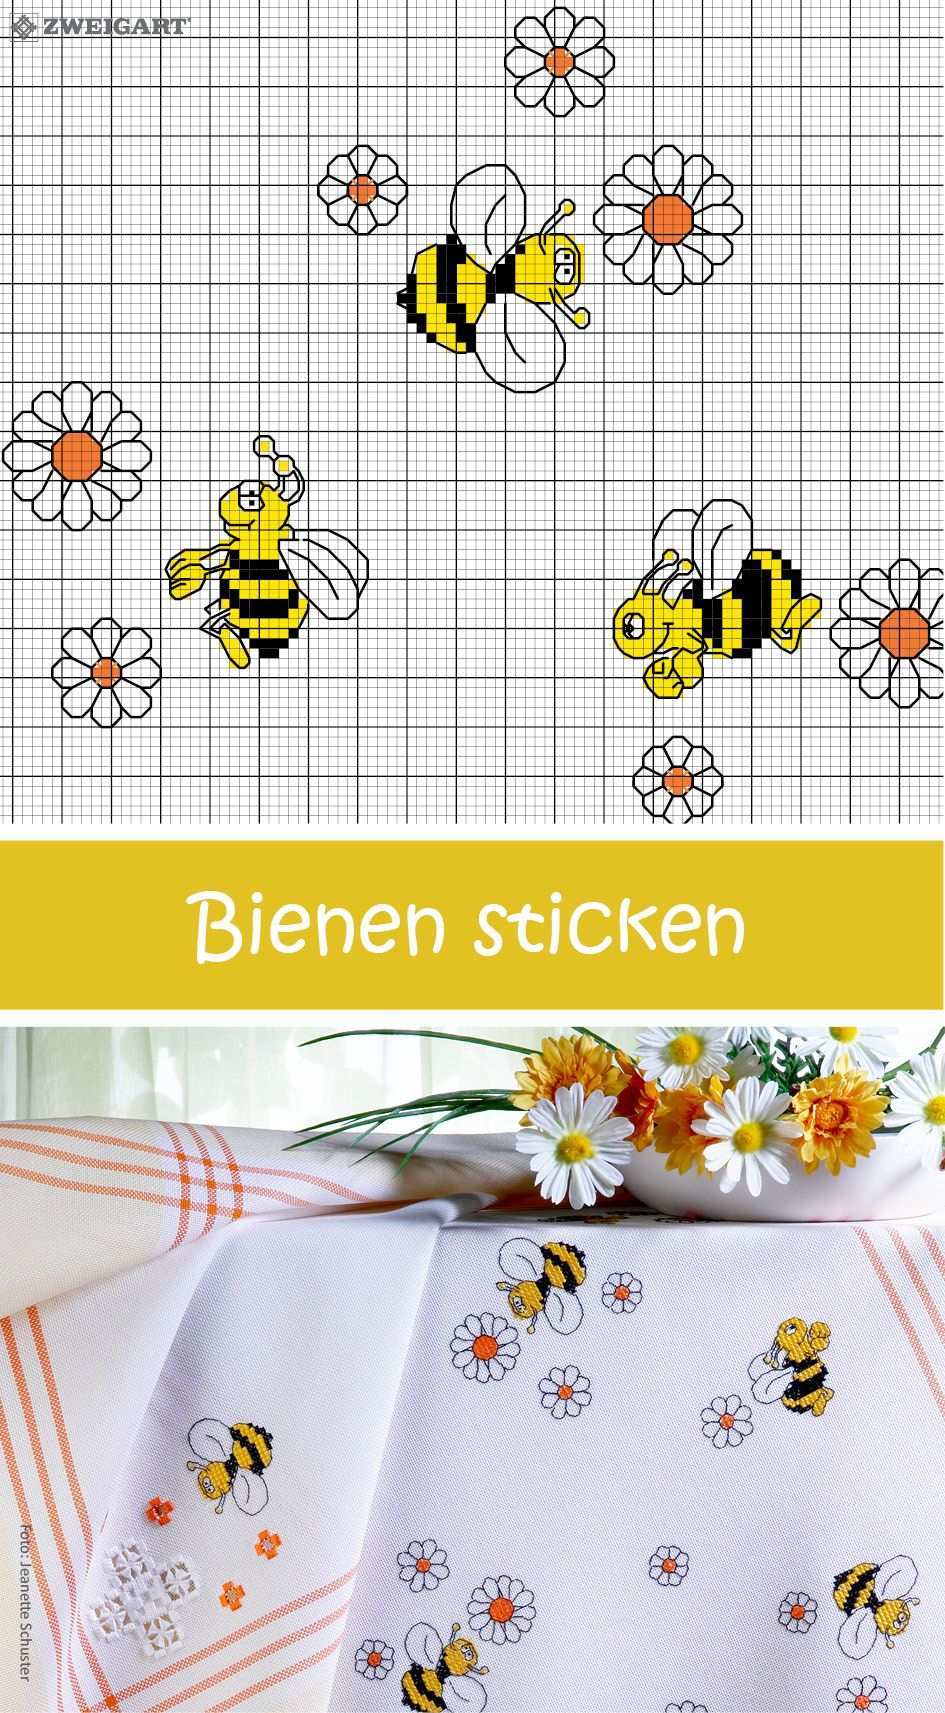 Frohliche Bienen Sticken Entdecke Zahlreiche Kostenlose Charts Zum Sticken Kreuzstich Kuche Kreuzstich Lesezeichen Kleiner Kreuzstich